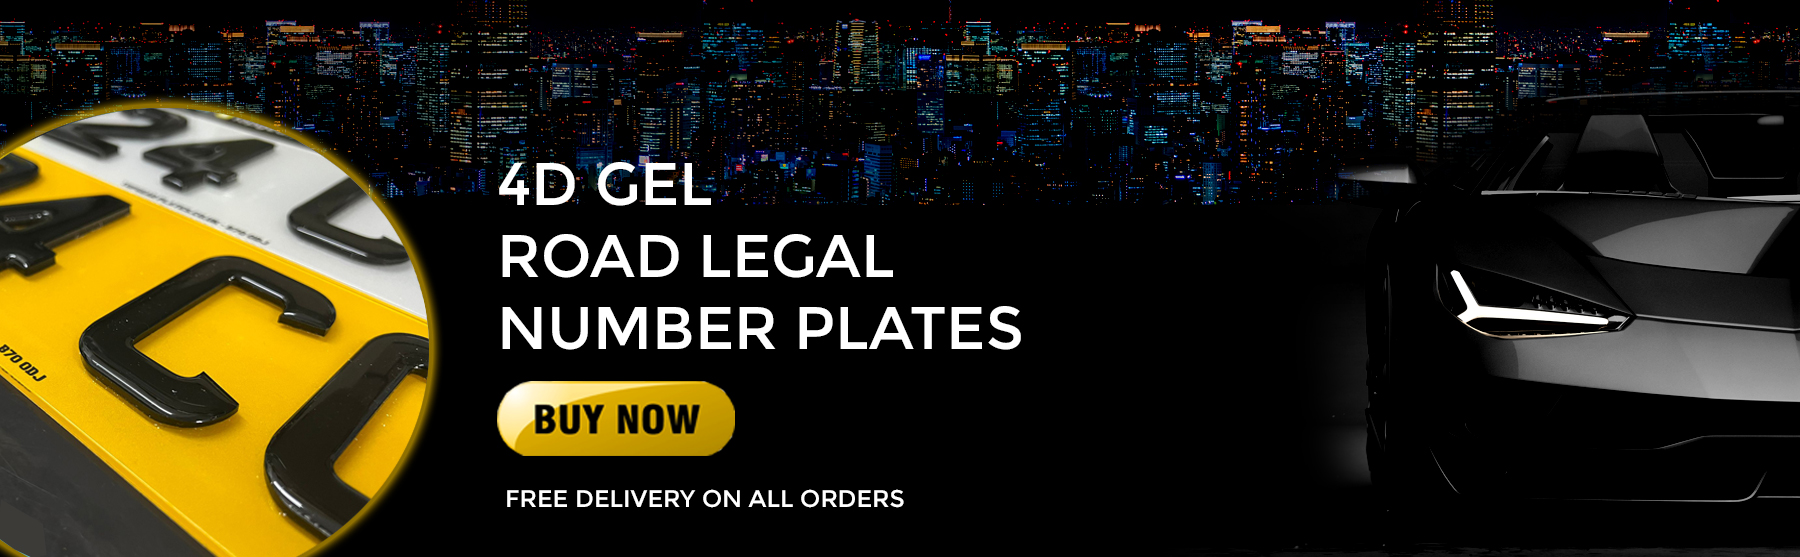 4d gel road legal number plates